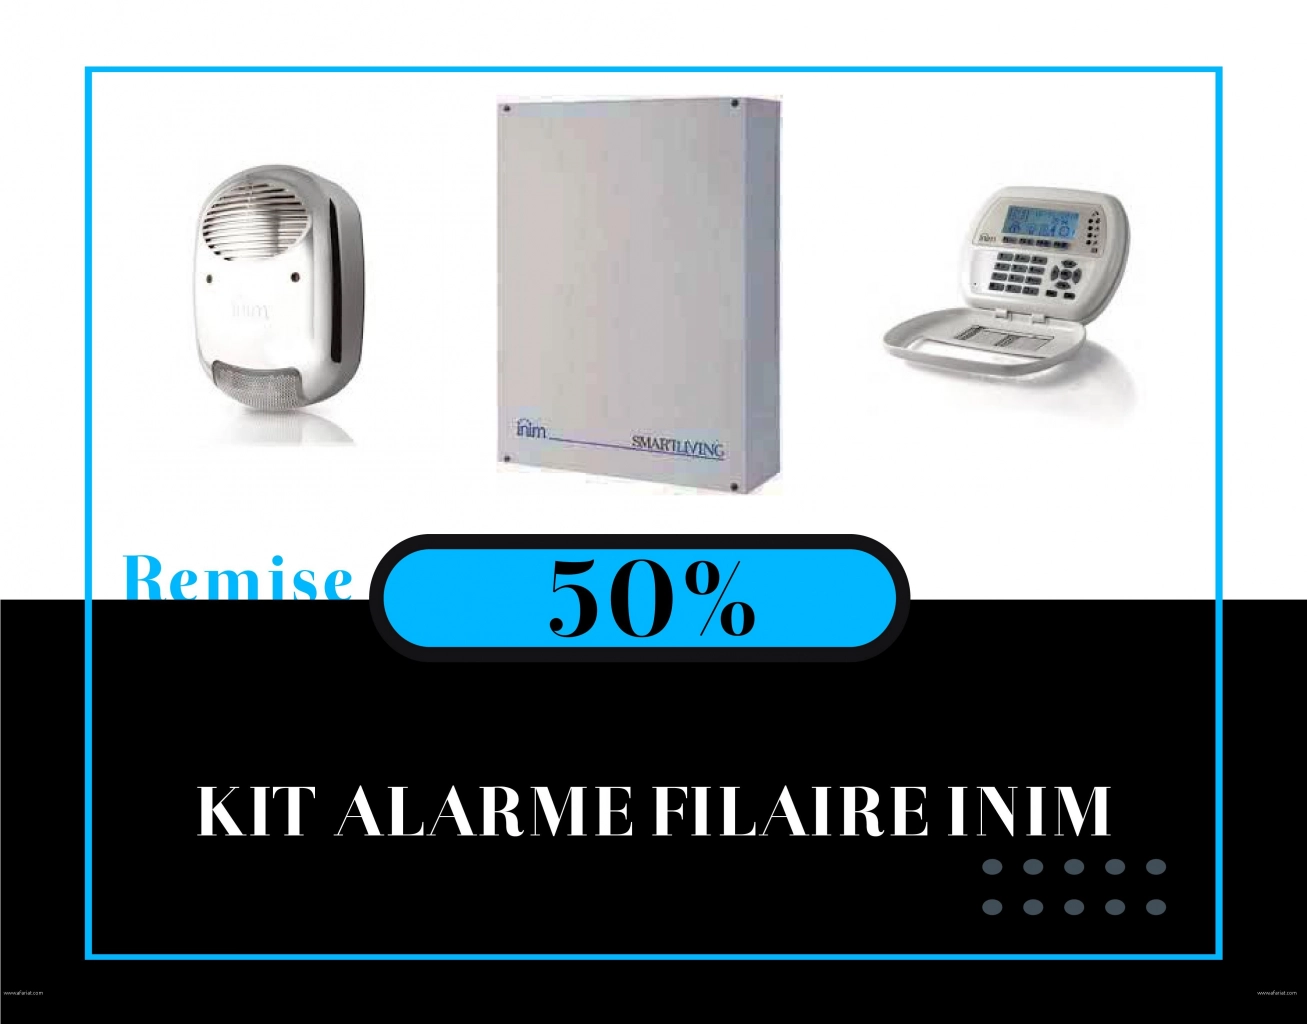 IST : kit alarme filaire INIM